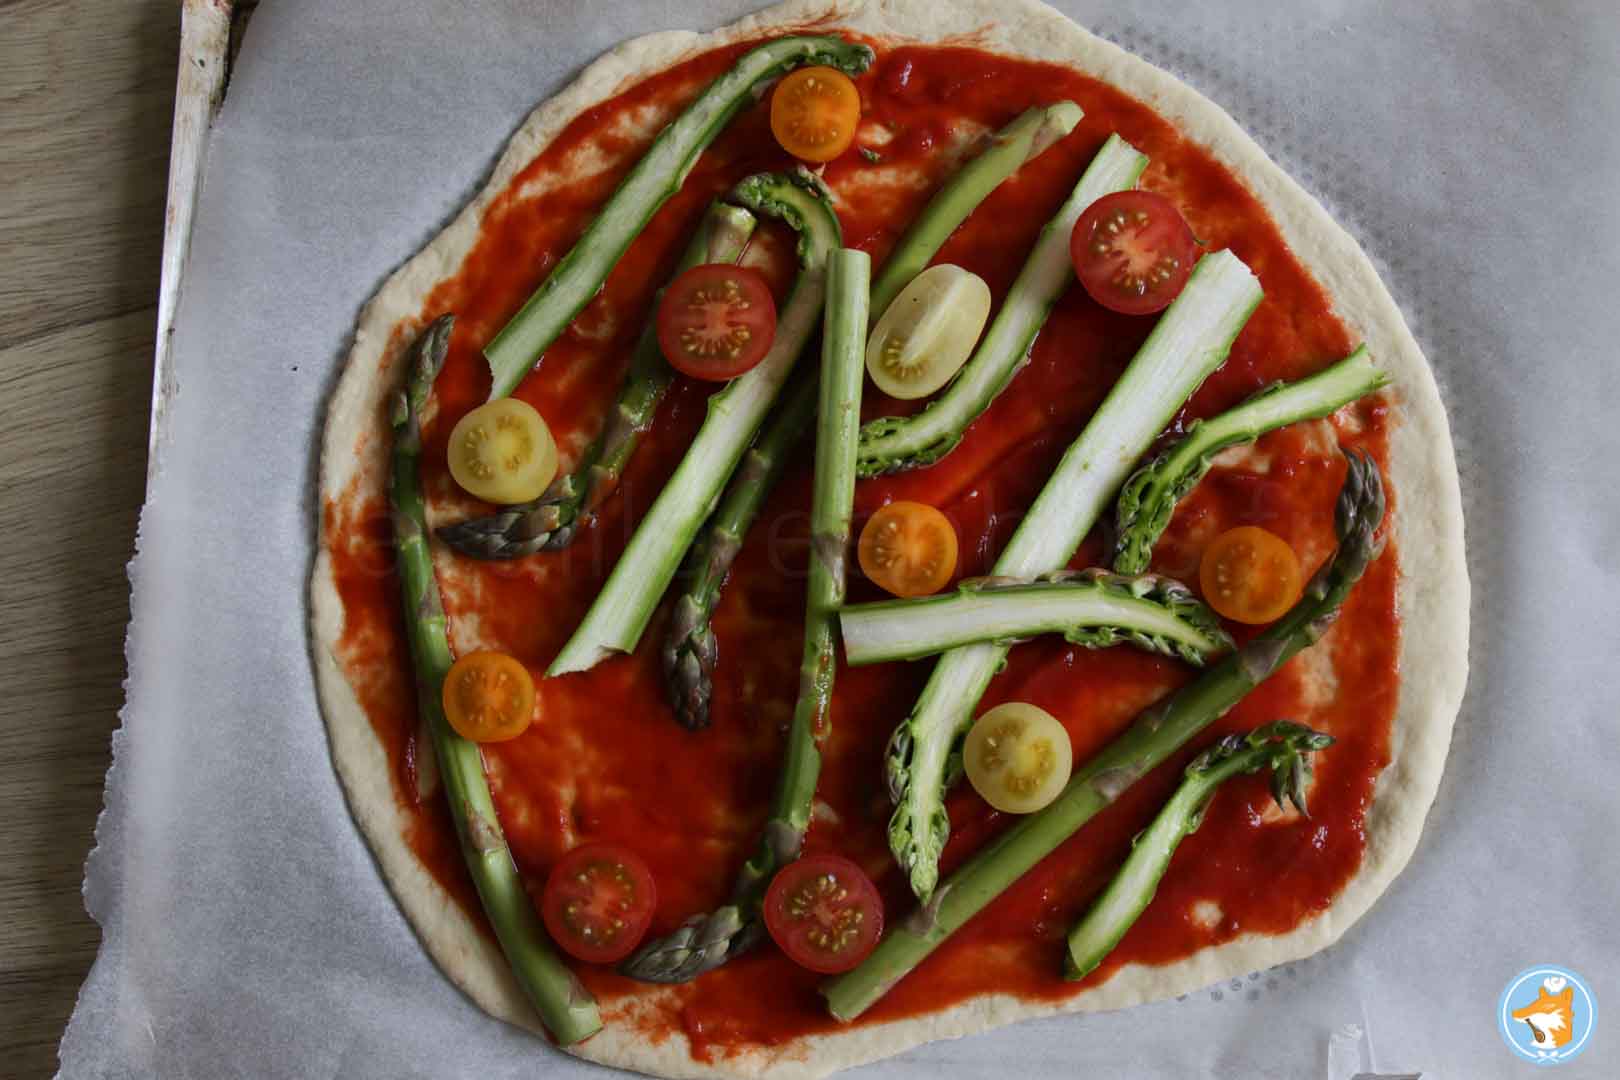 Continuez cette recette de pizza gourmande et facile en ajoutant vos légumes avant de cuire la pizza